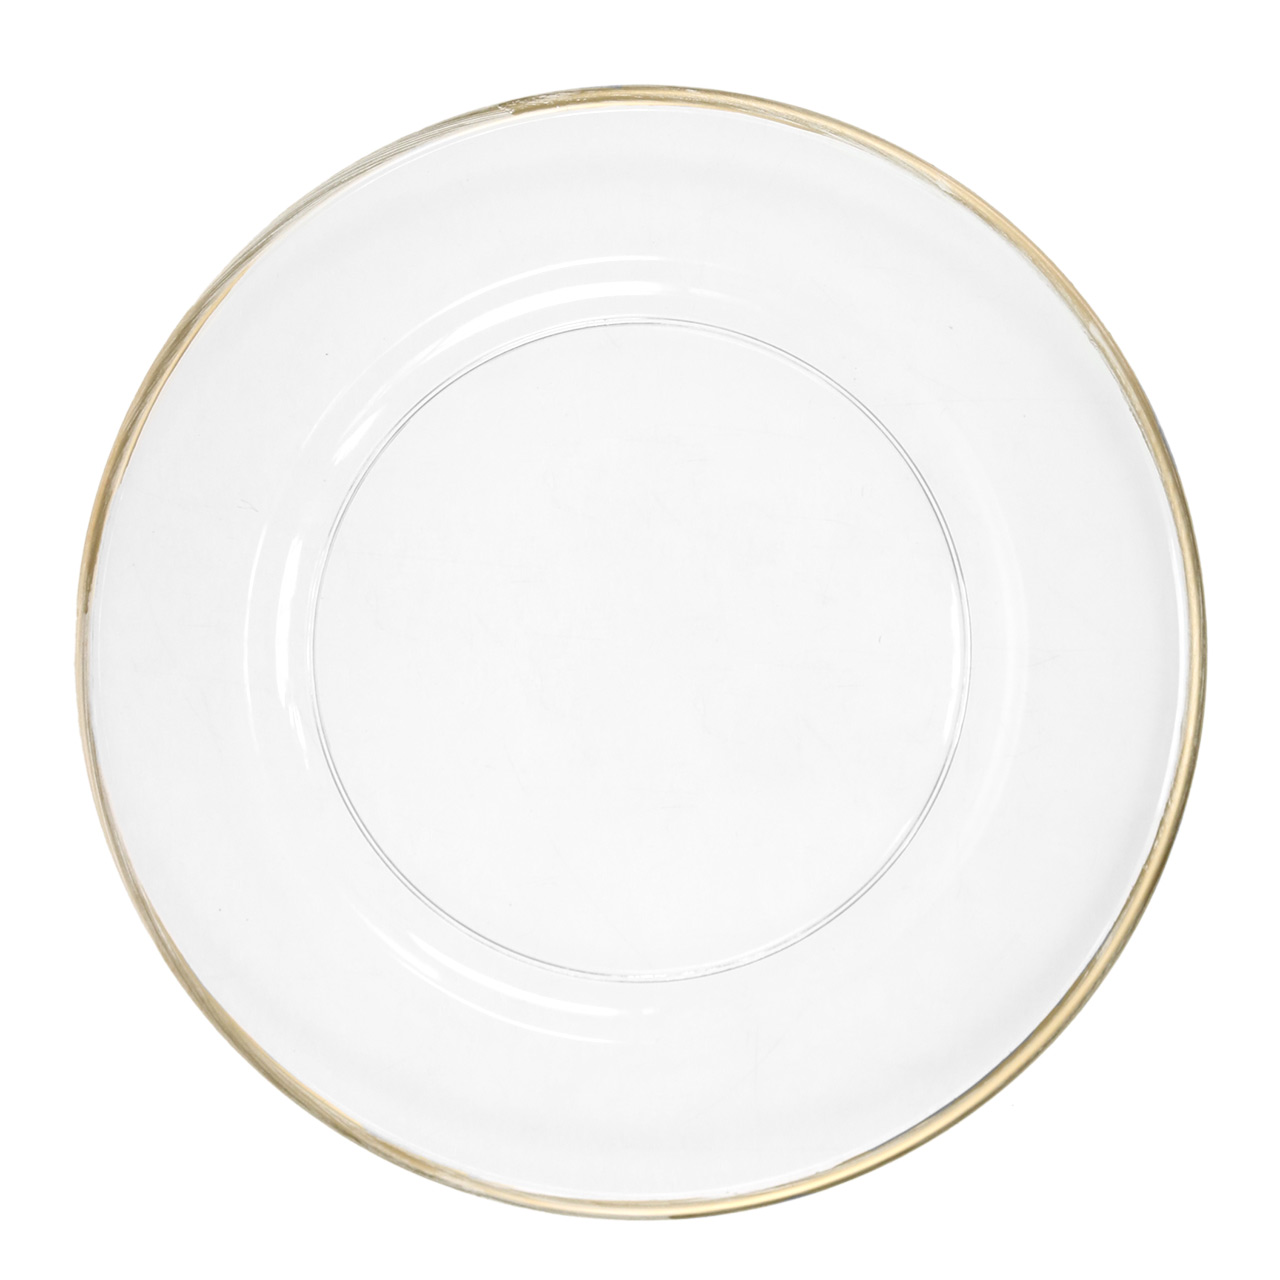 6 assiettes ronde blanches bord doré